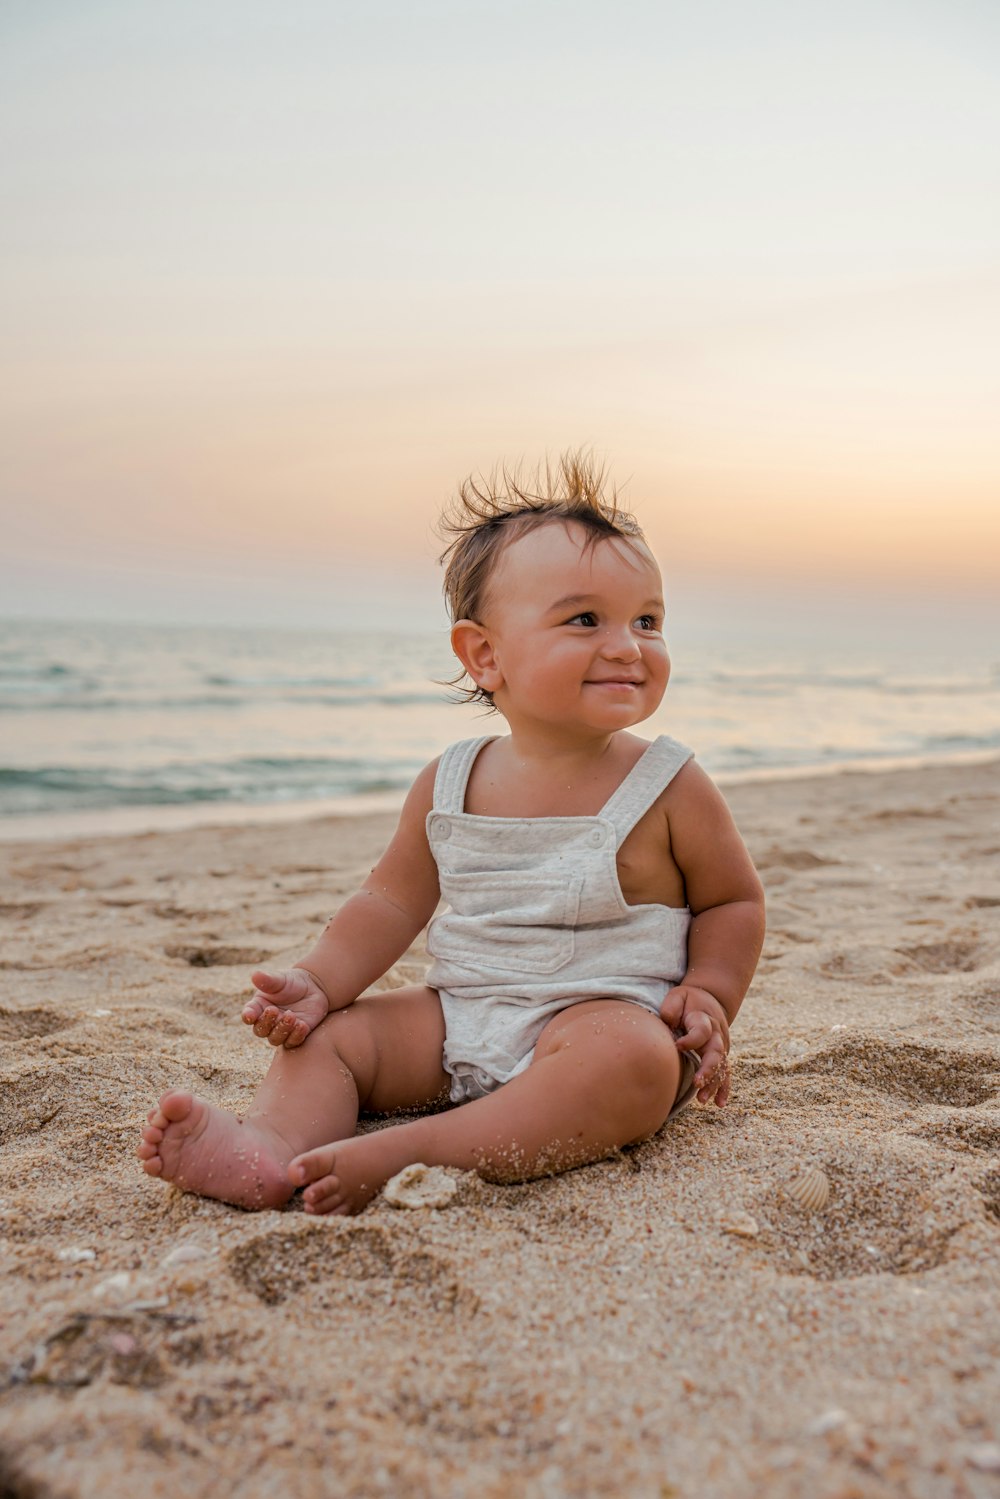 ビーチの砂浜に座っている赤ちゃん